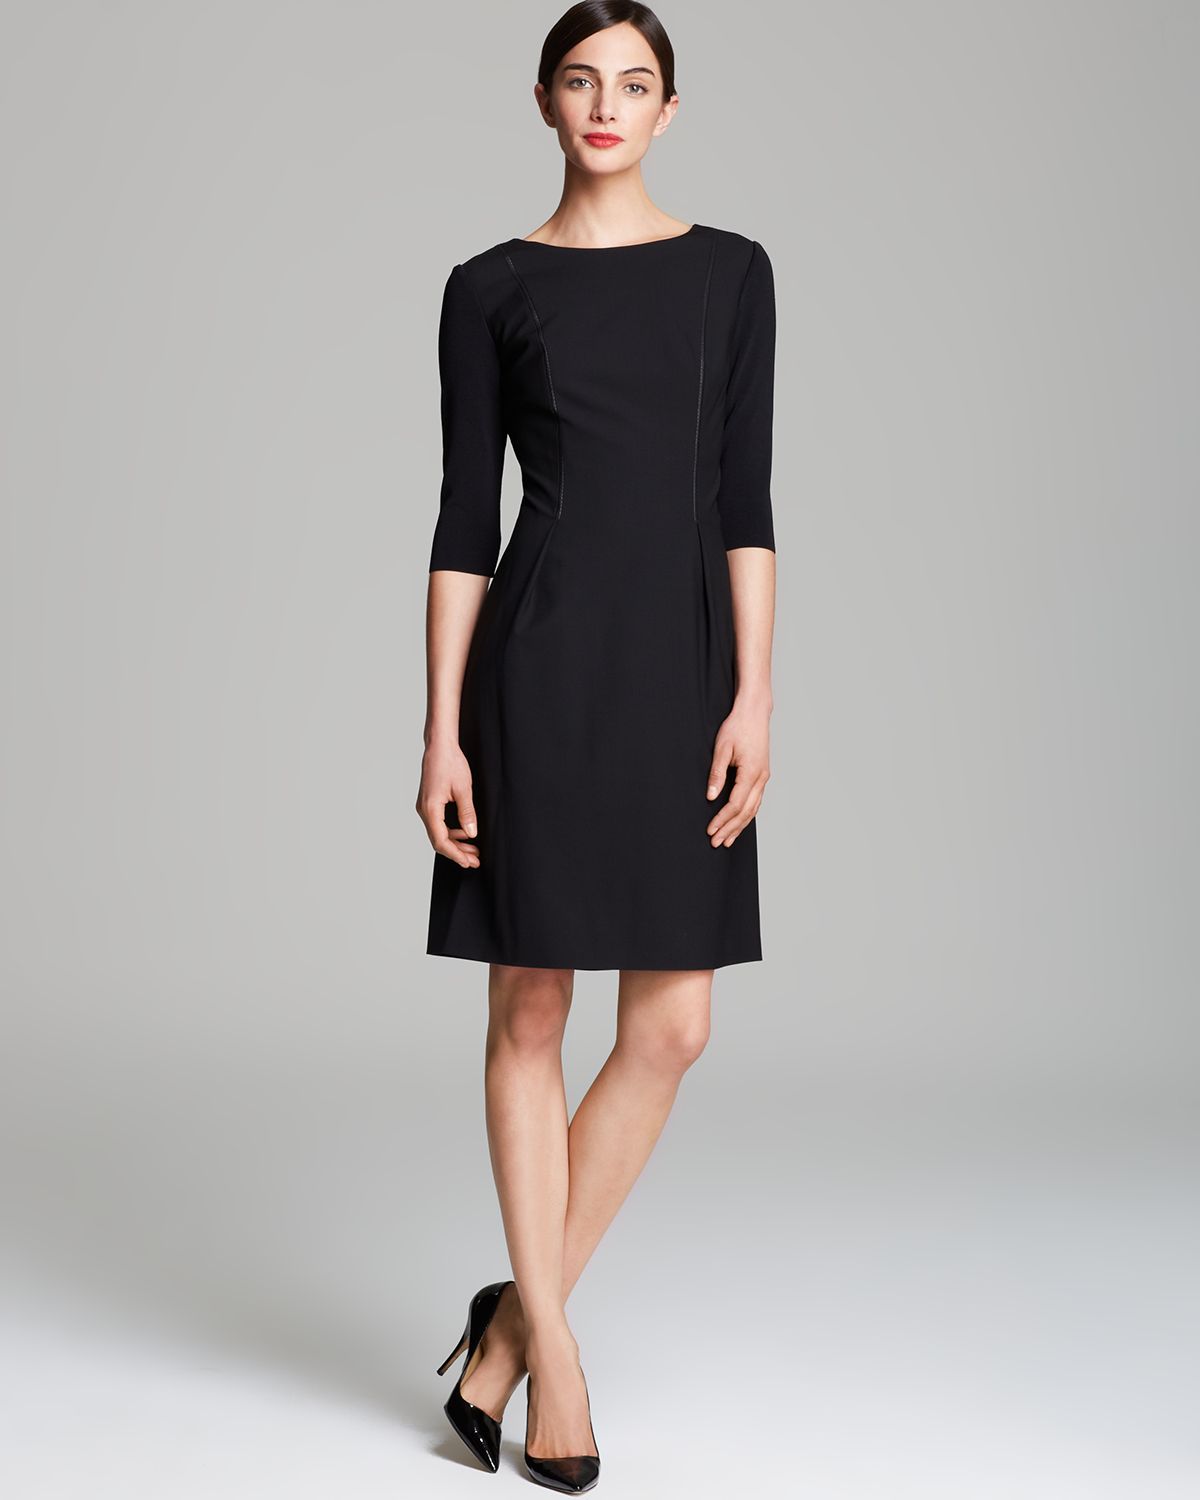 Lyst - Elie Tahari Holly Dress in Black